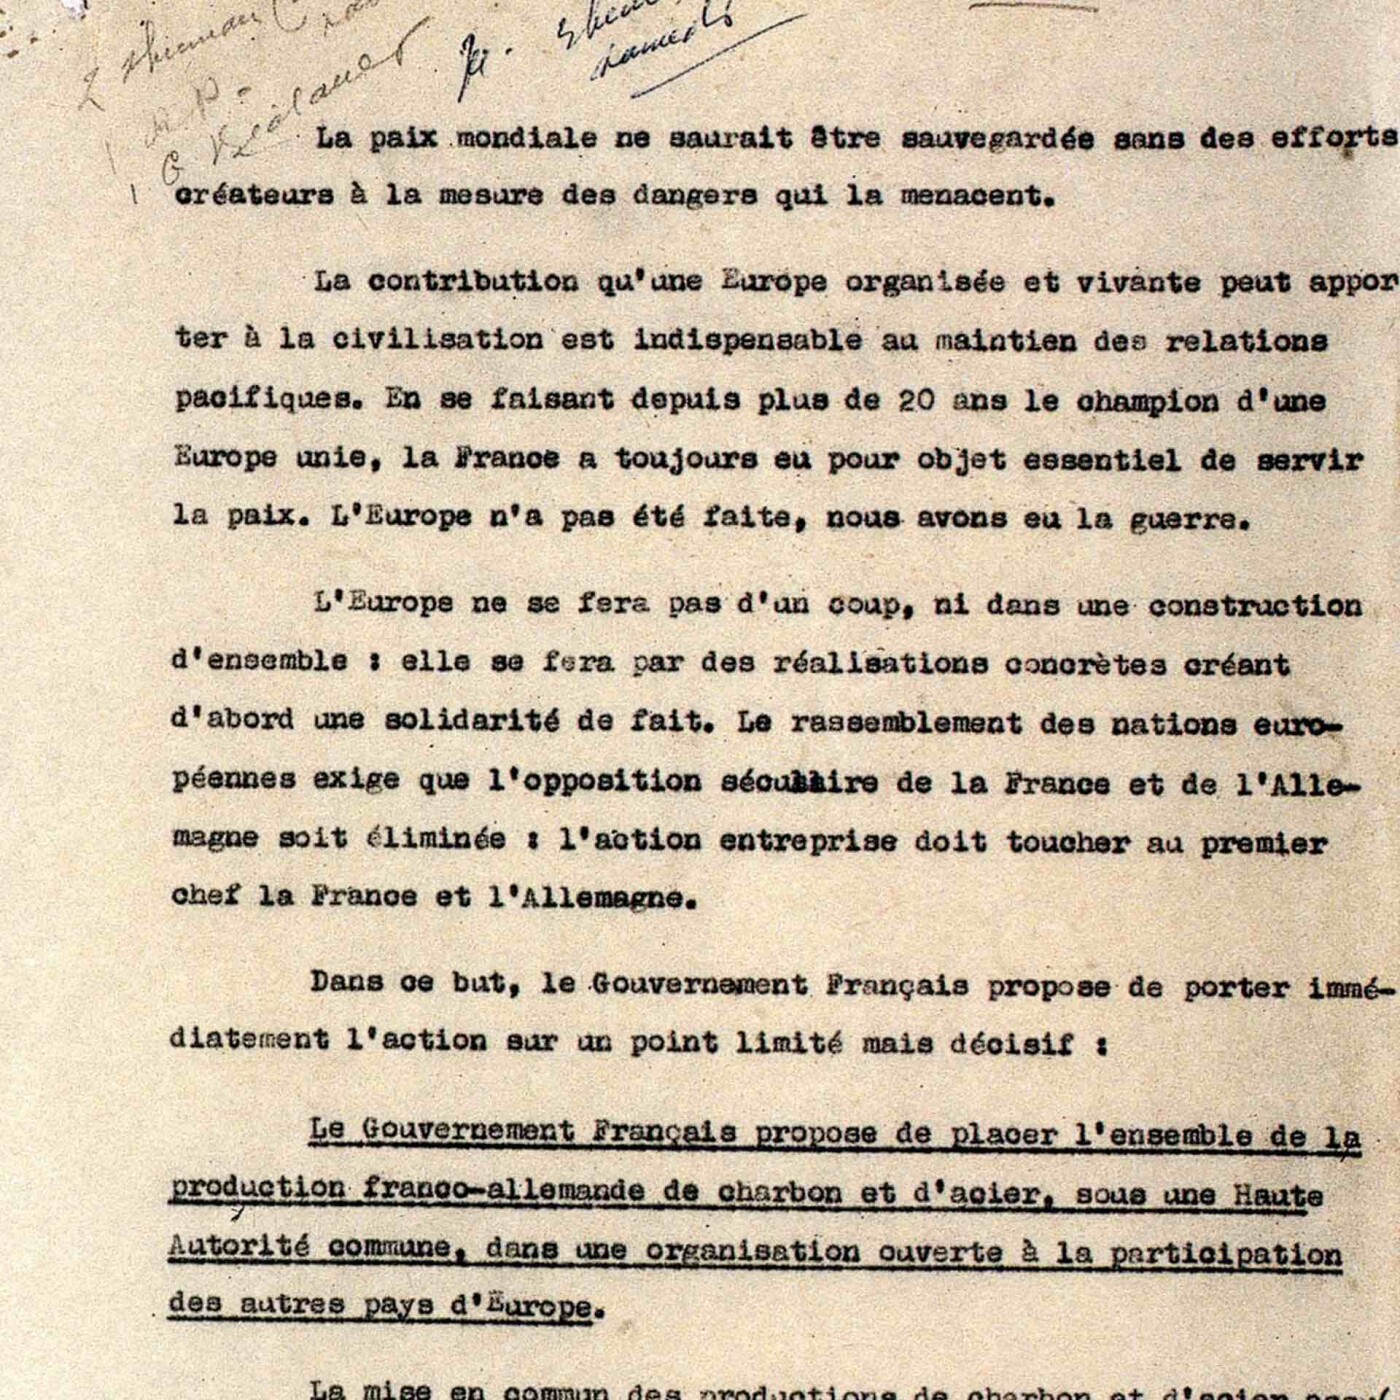 The Schuman Declaration